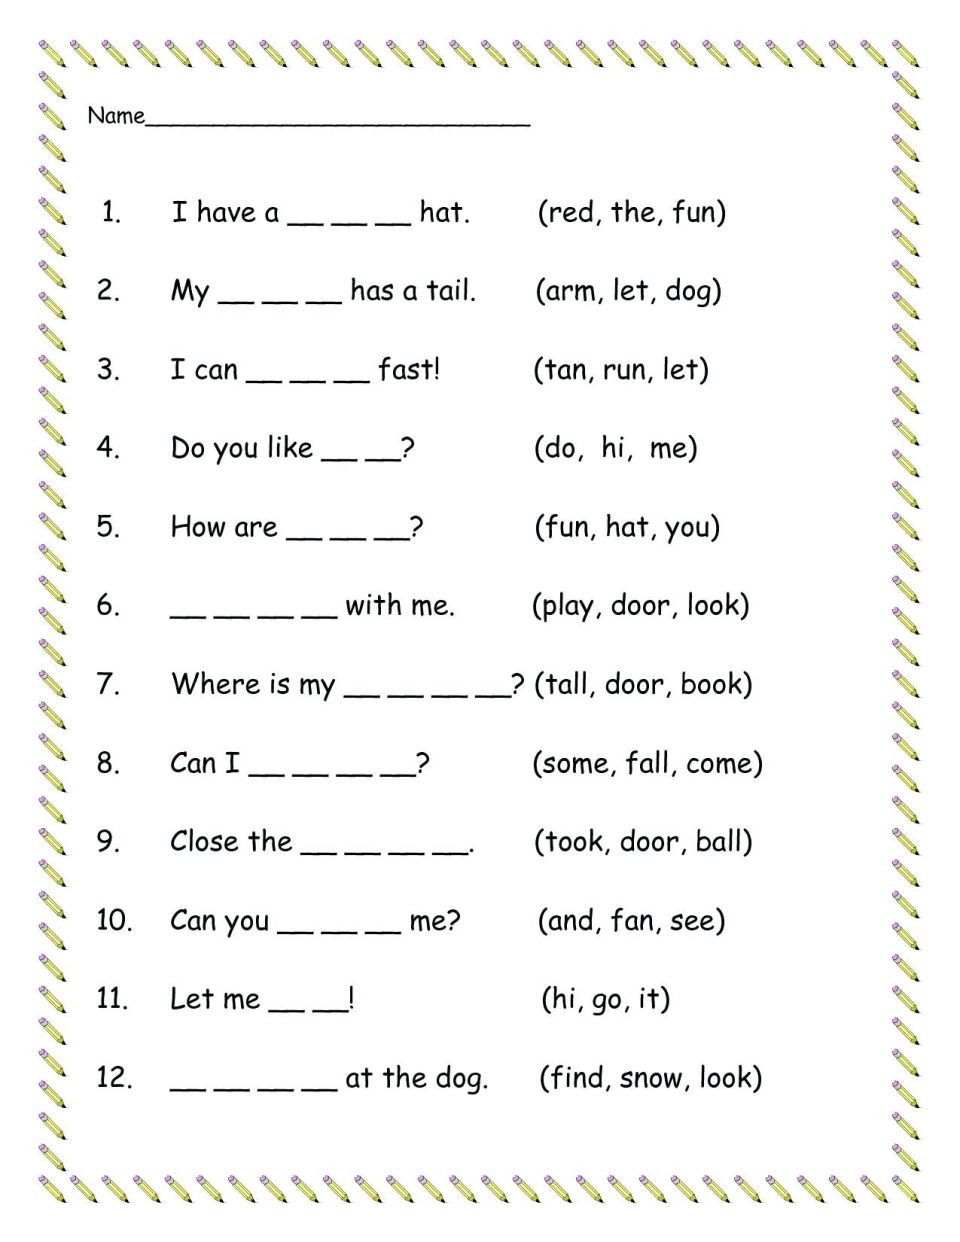 free-printable-sight-words-sentences-for-kindergarten-klobooster